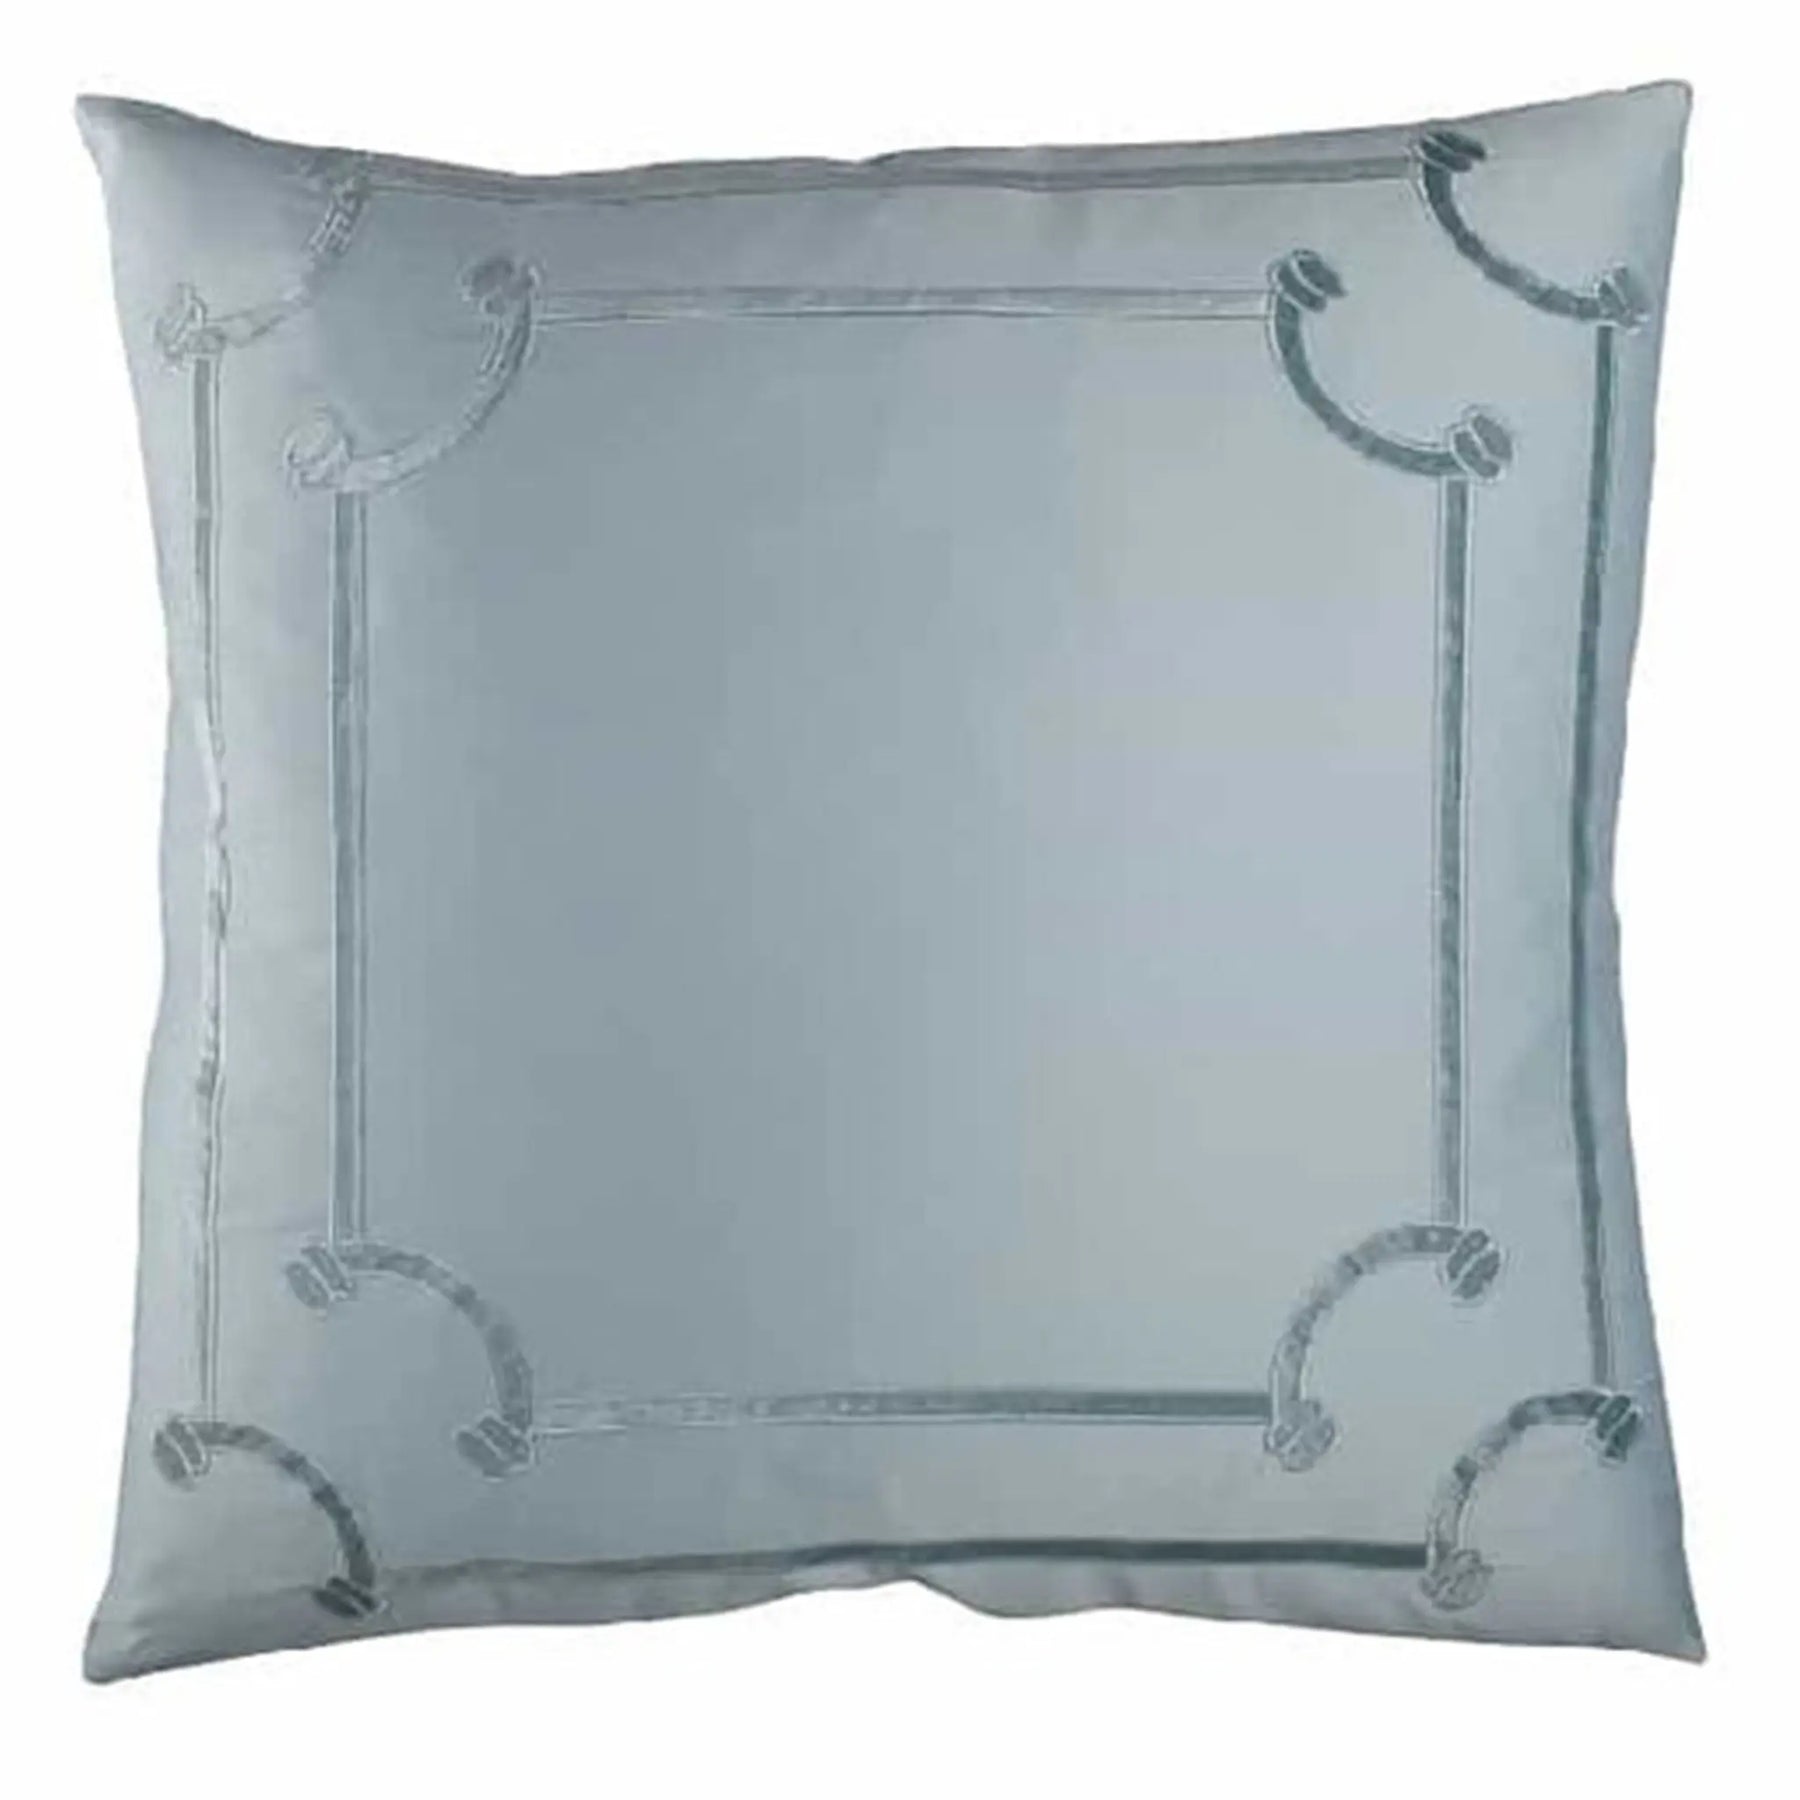 Lili Alessandra Vendome Euro Pillow in Sea Foam